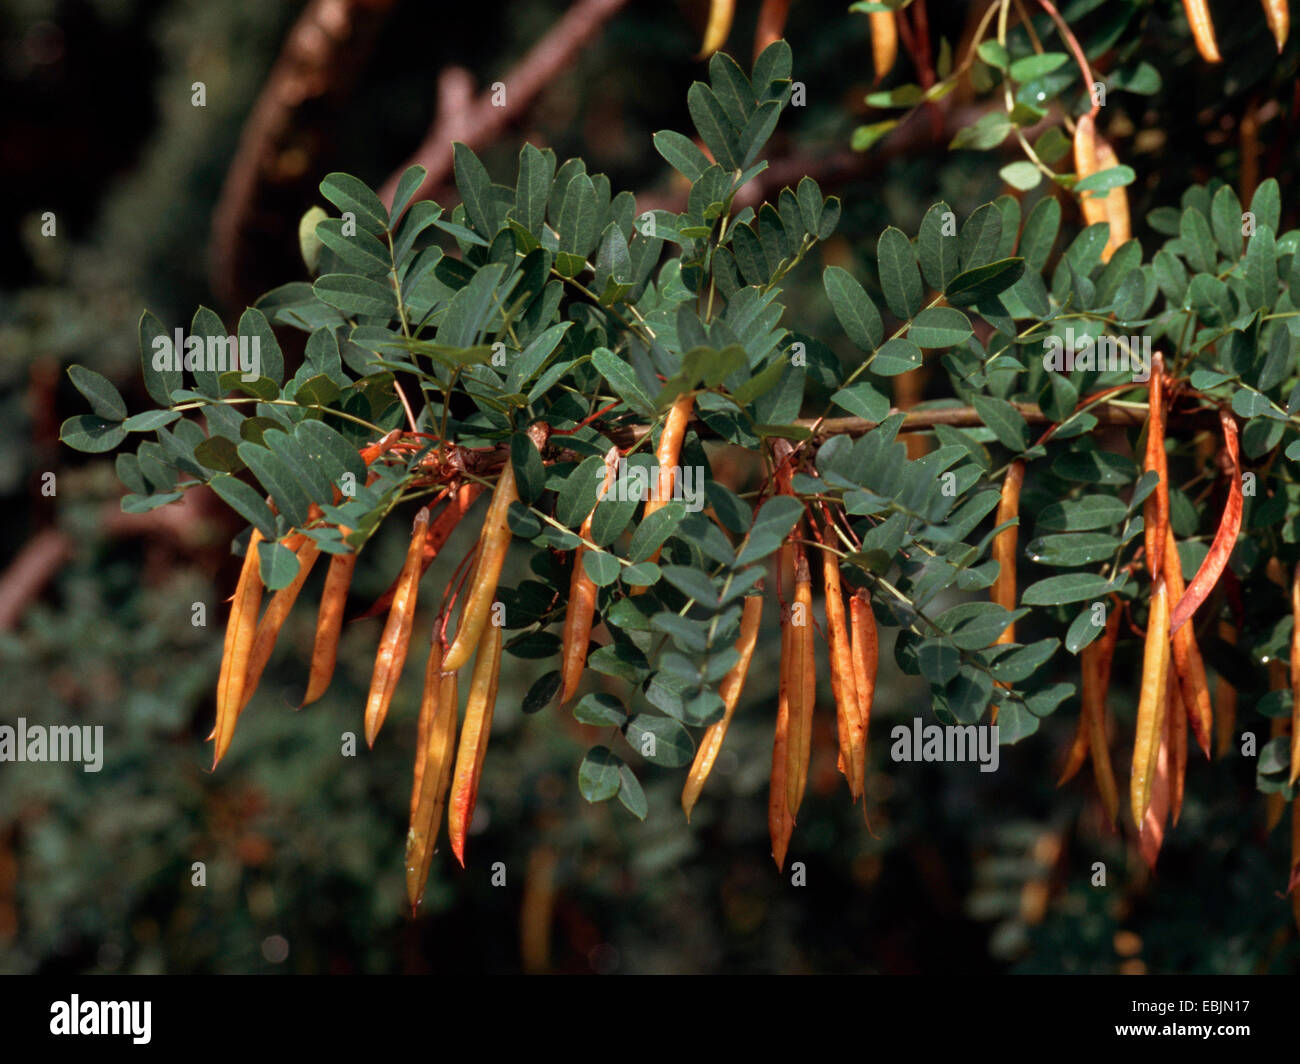 pea shrub, pea tree, Siberian pea shrub (Caragana arborescens), fruiting Stock Photo